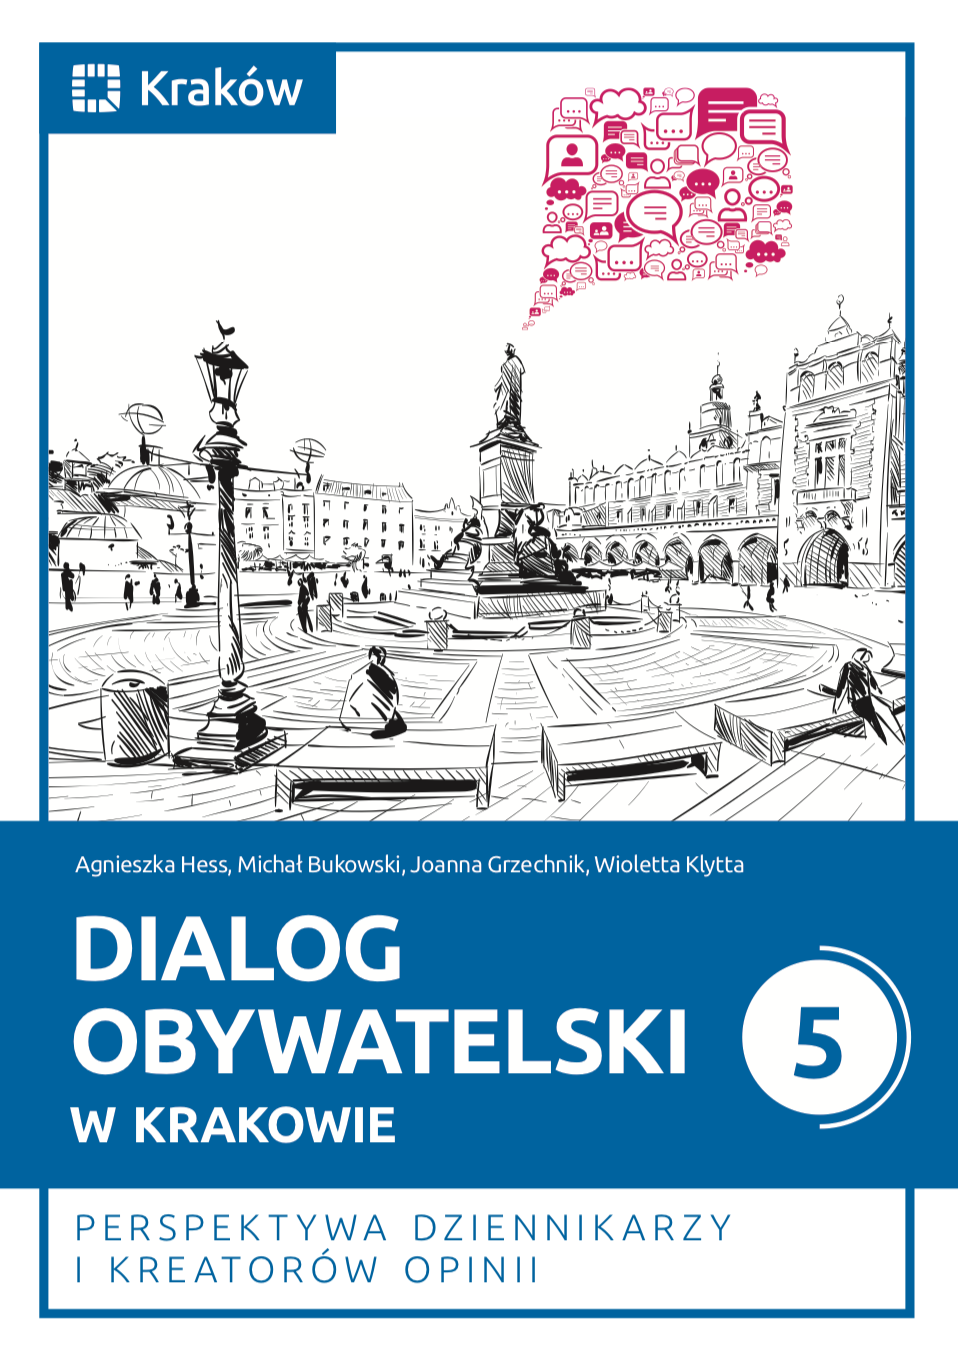 okładka książki "Dialog obywatelski w Krakowie 5. Perspektywa dziennikarzy i kreatorów opinii"